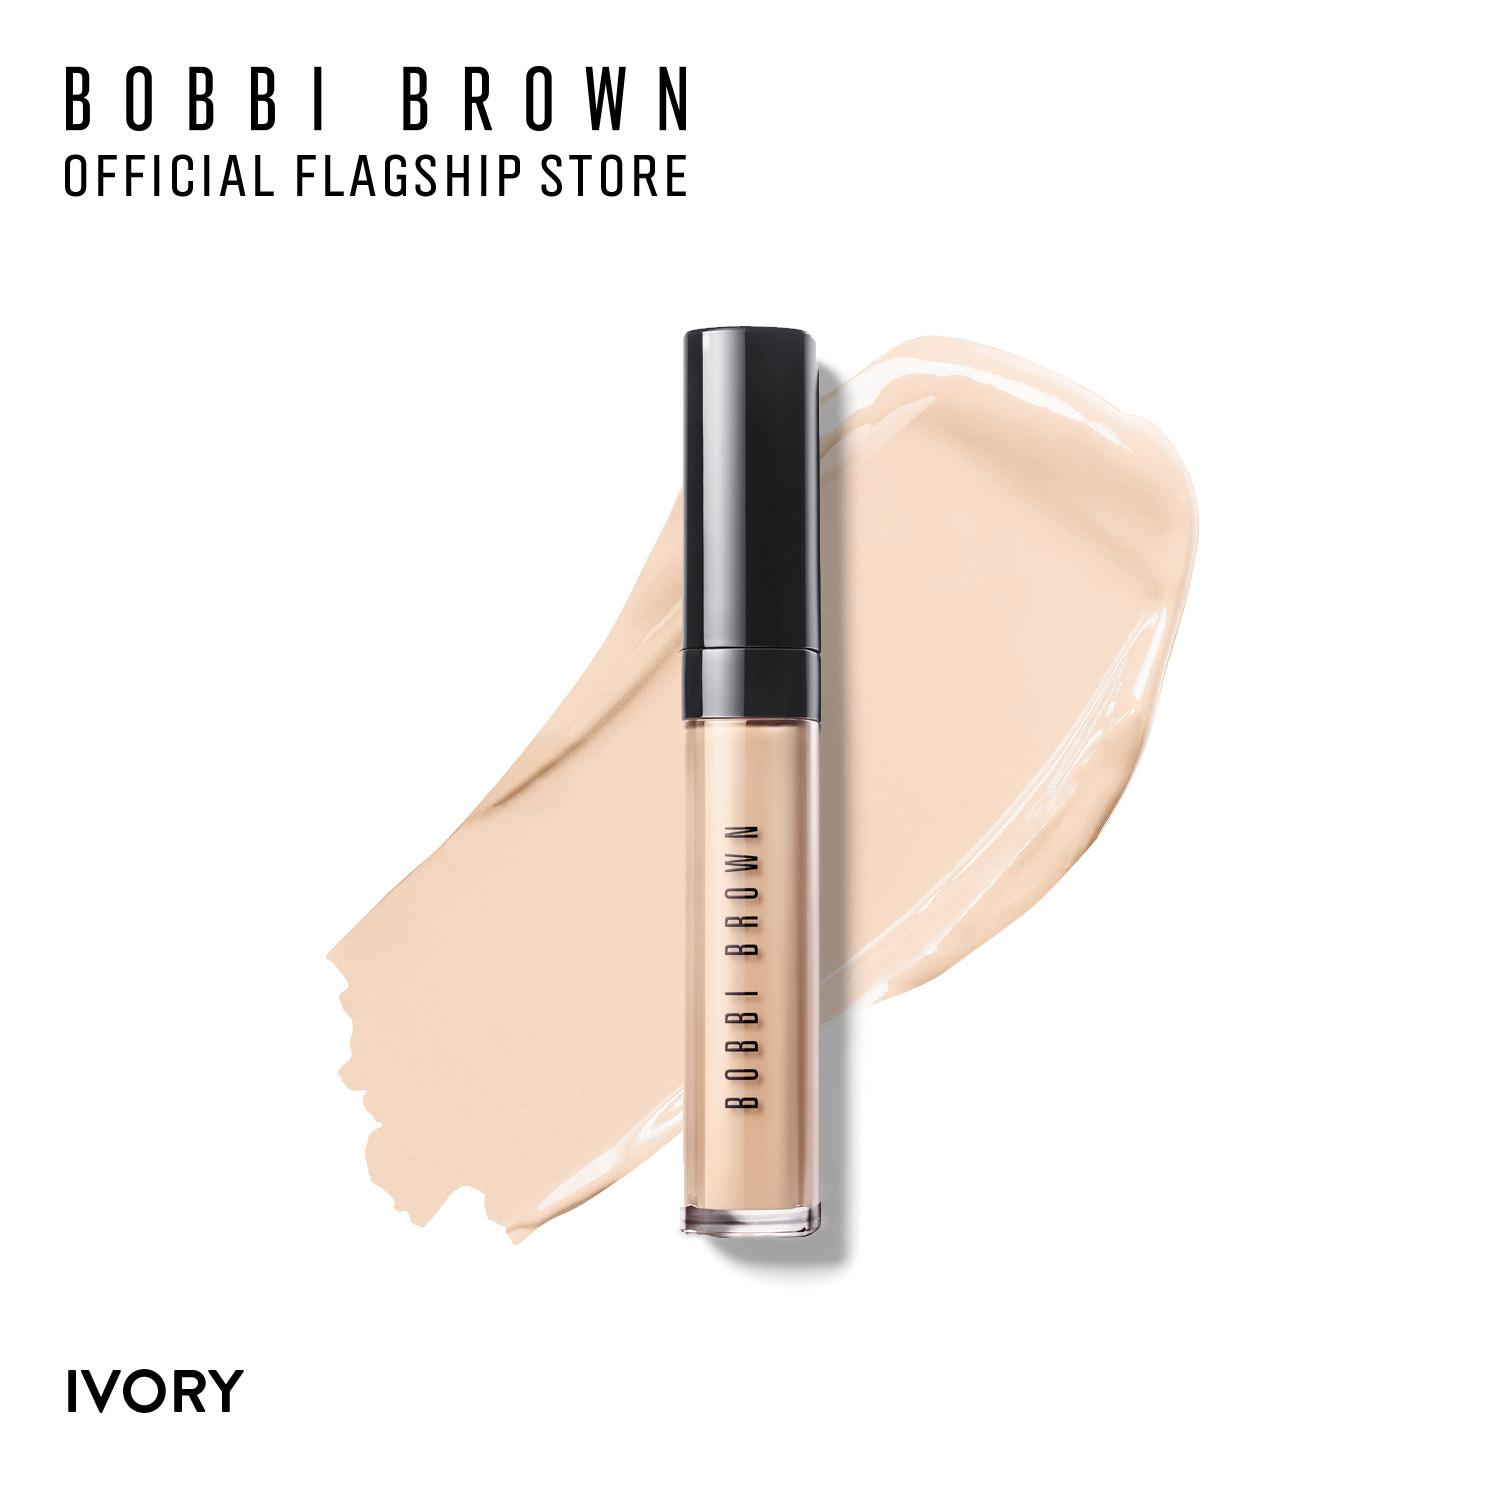 บ็อบบี้ บราวน์ คอนซีลเลอร์ Bobbi Brown Instant Full Cover Concealer 6ml